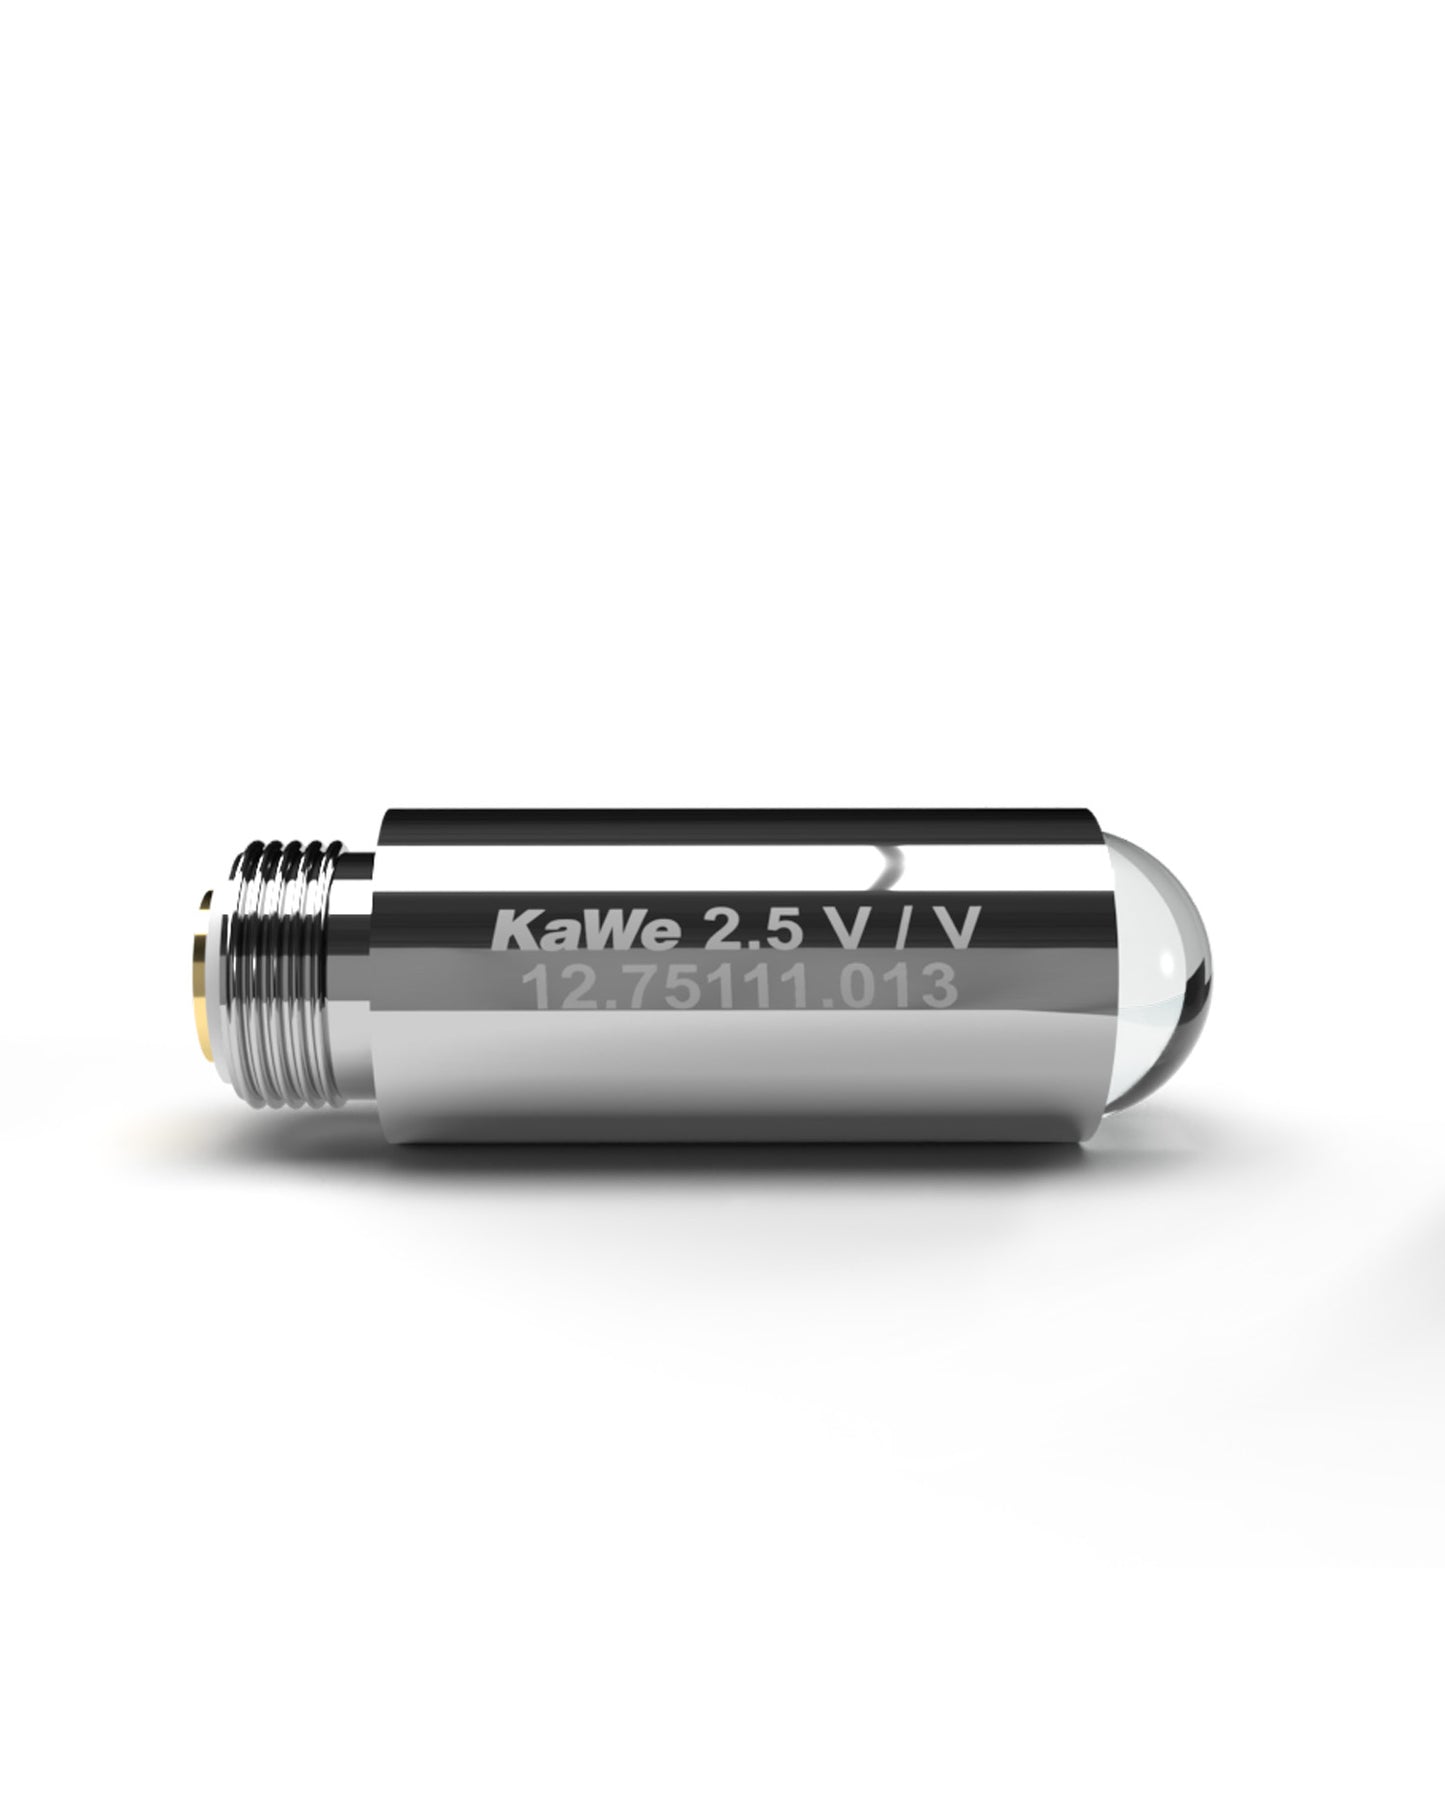 KaWe Vacuum Lamp (12.75111.013)